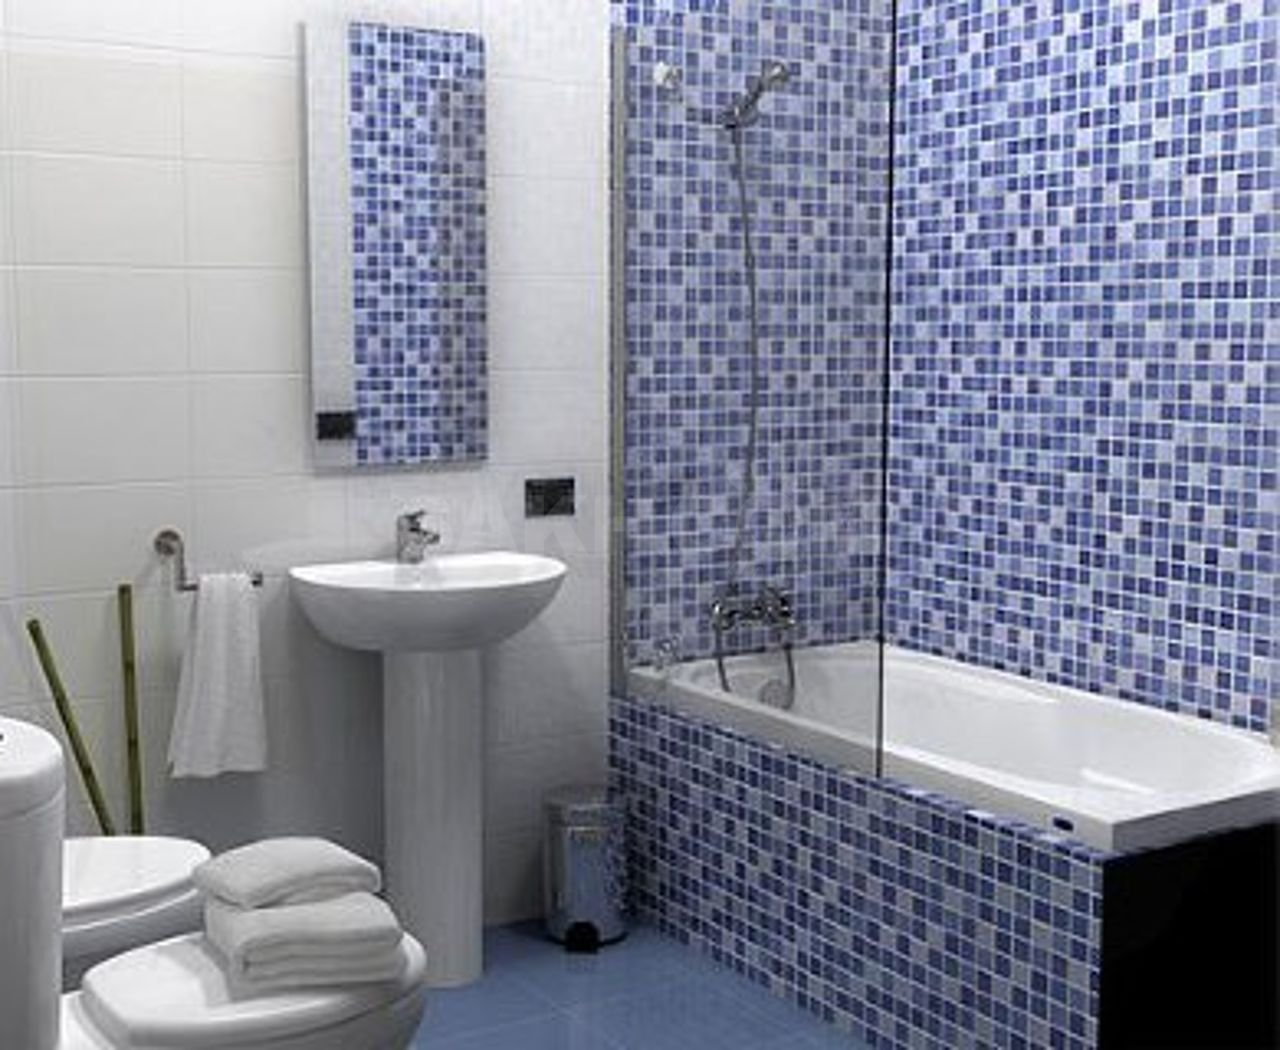 Мозаика для ванной plitka mosaica ru. Плитка мозаика для ванной комнаты. Мозаичная плитка для ванной. Ванная отделанная мозаикой. Ванная отделанная плиткой.